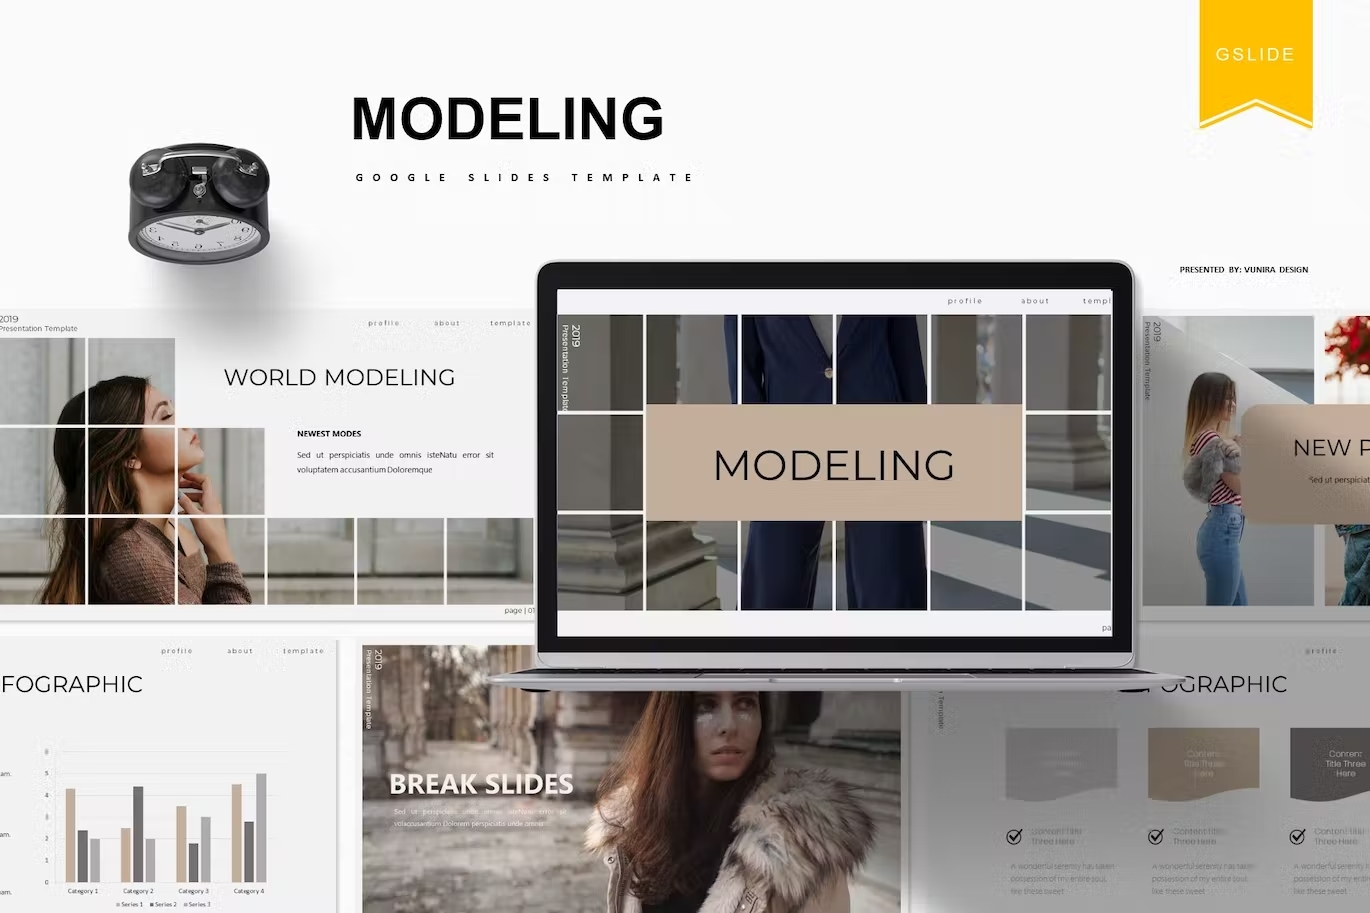 Black lettering "Modeling Google Slides Template" and different slides and mockup macbook.